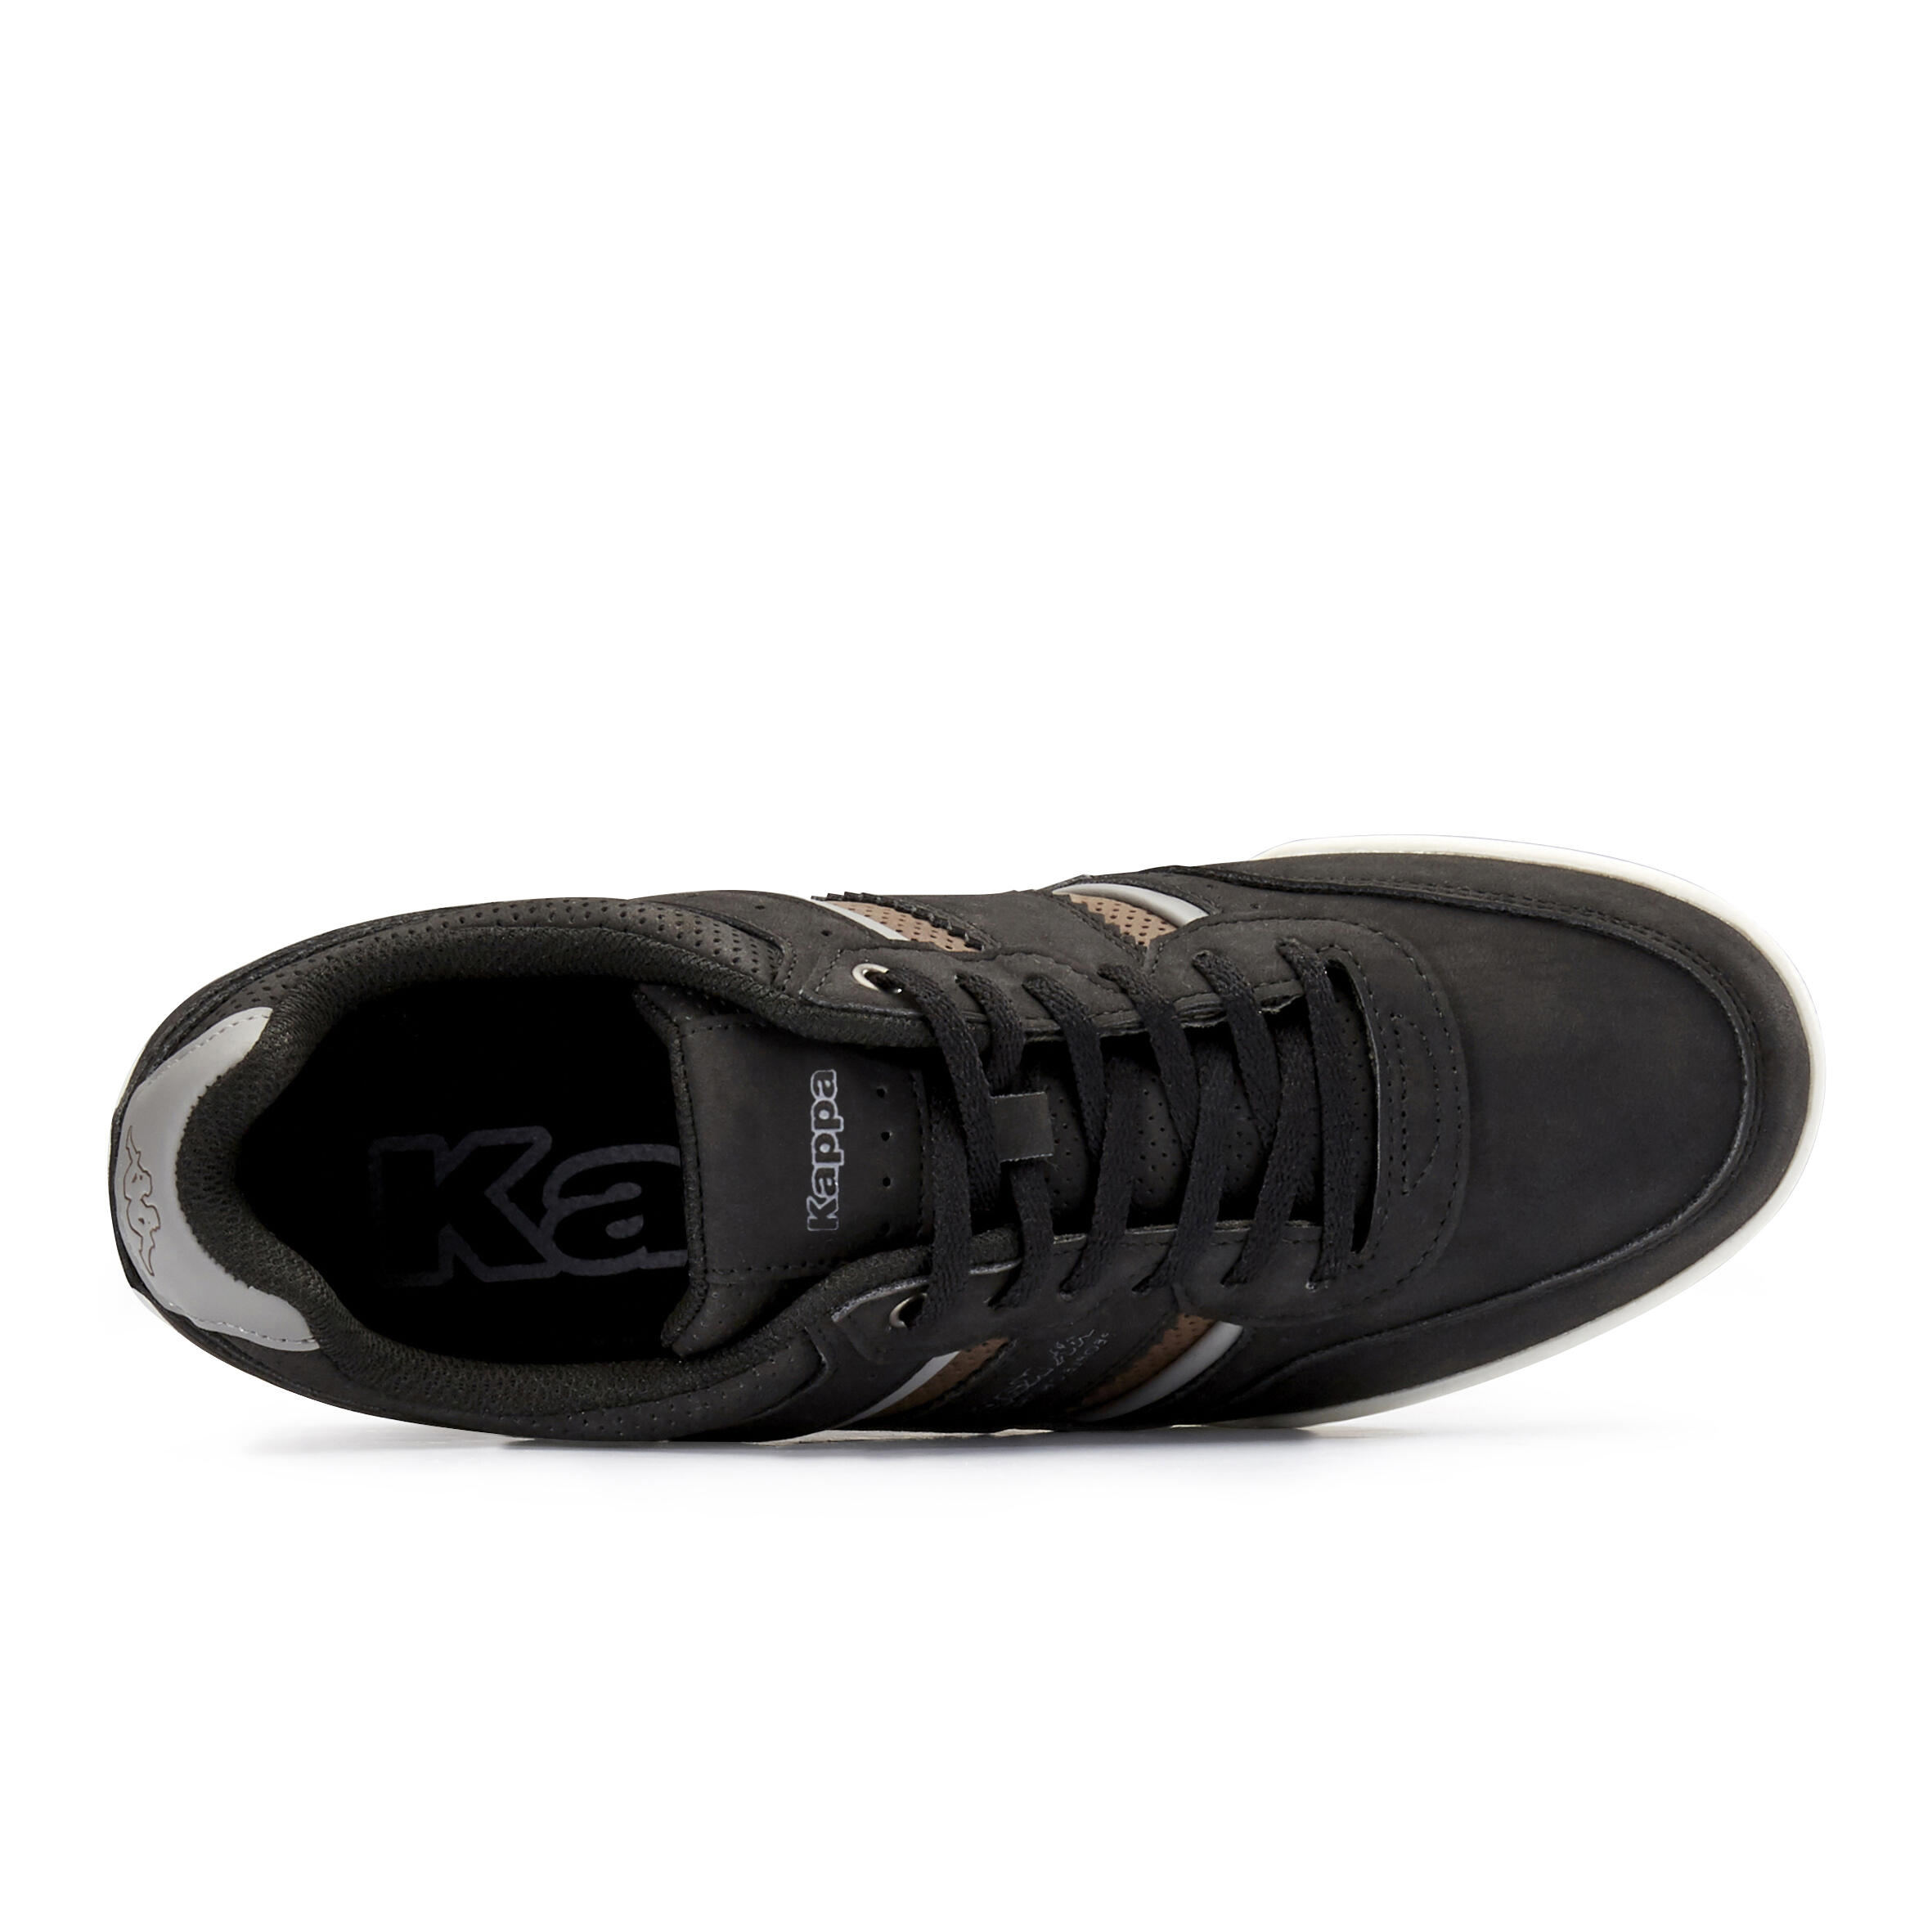 Kappa Marek Urban Walking Shoes - Black 6/8